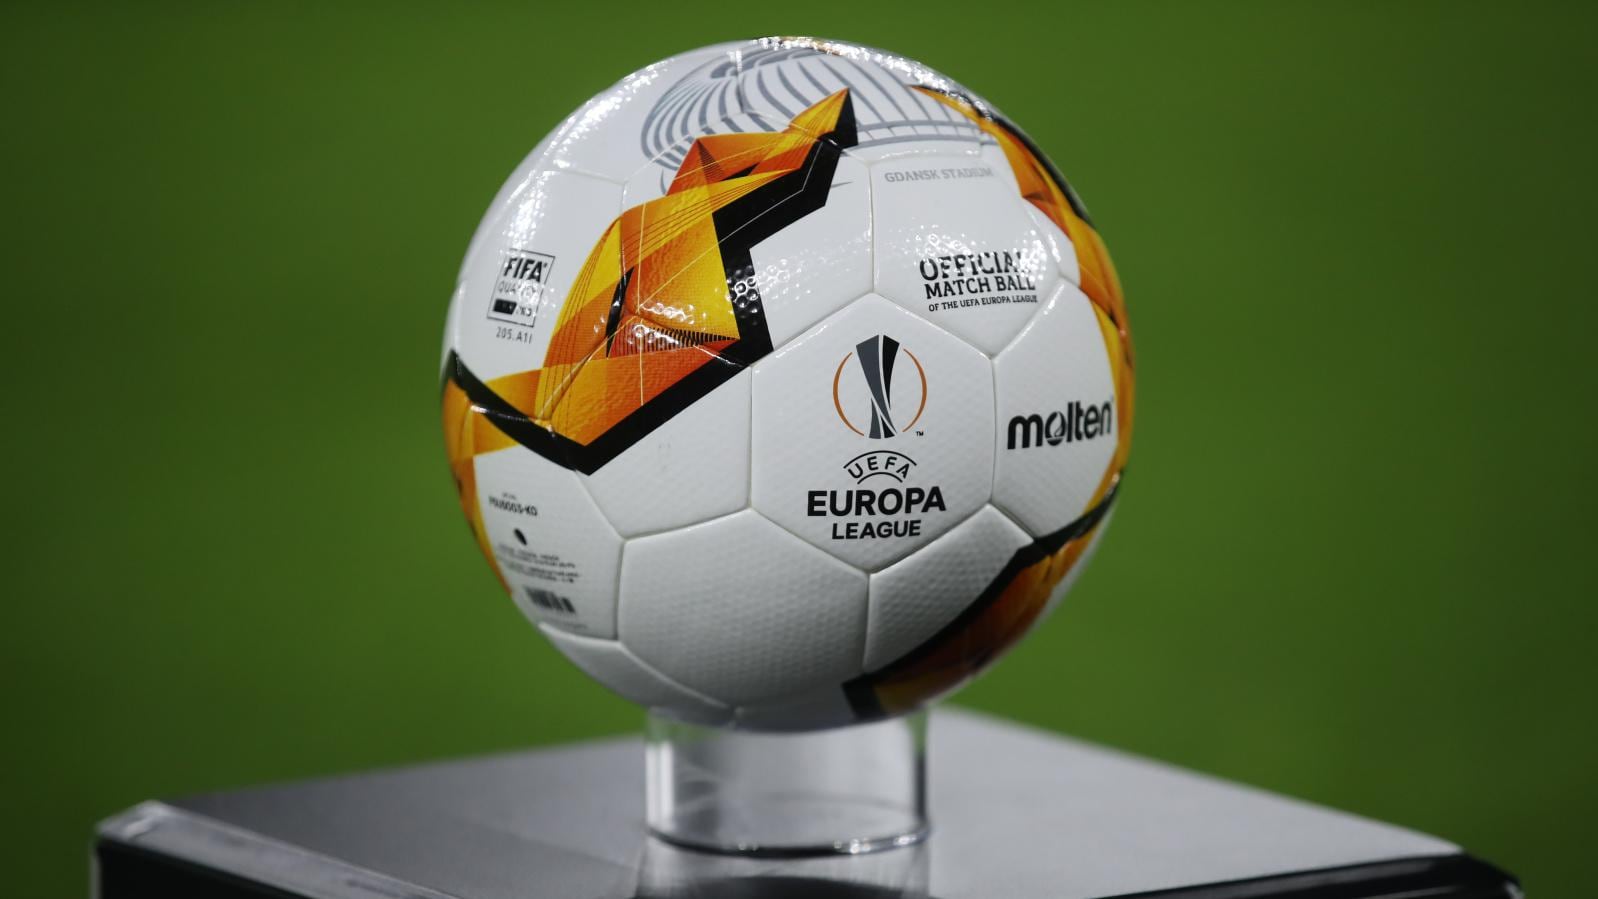 Molten Offizieller Spielball Europa League 2020 